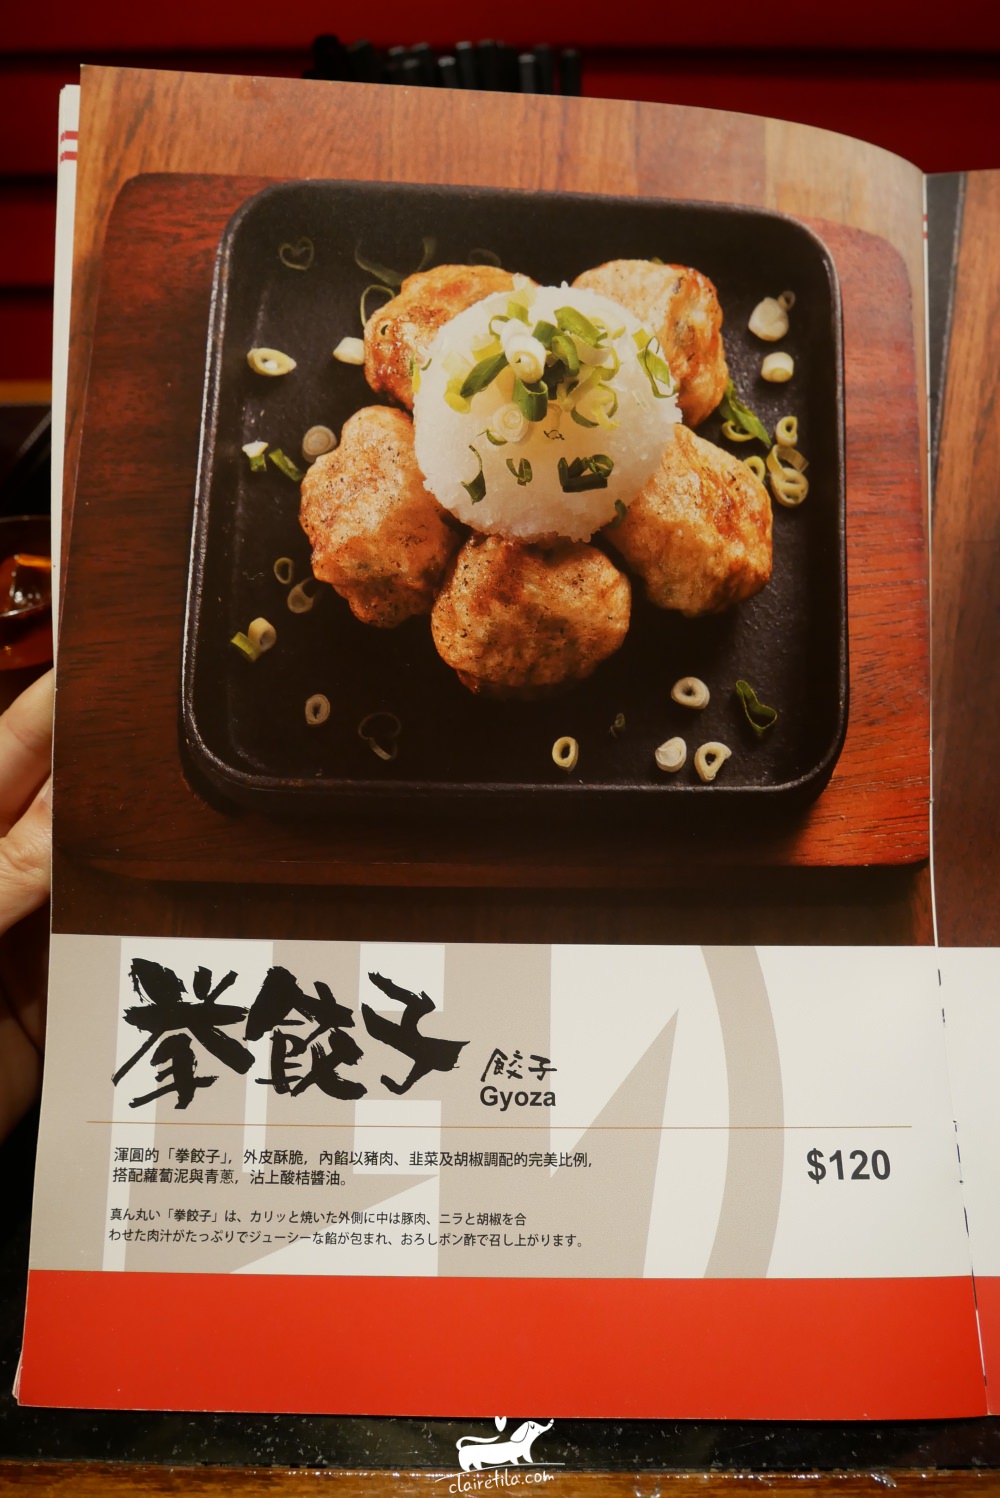 信義區美食餐廳》Nagi 豚骨拉麵菜單!Nagi Ramen菜單♥♥